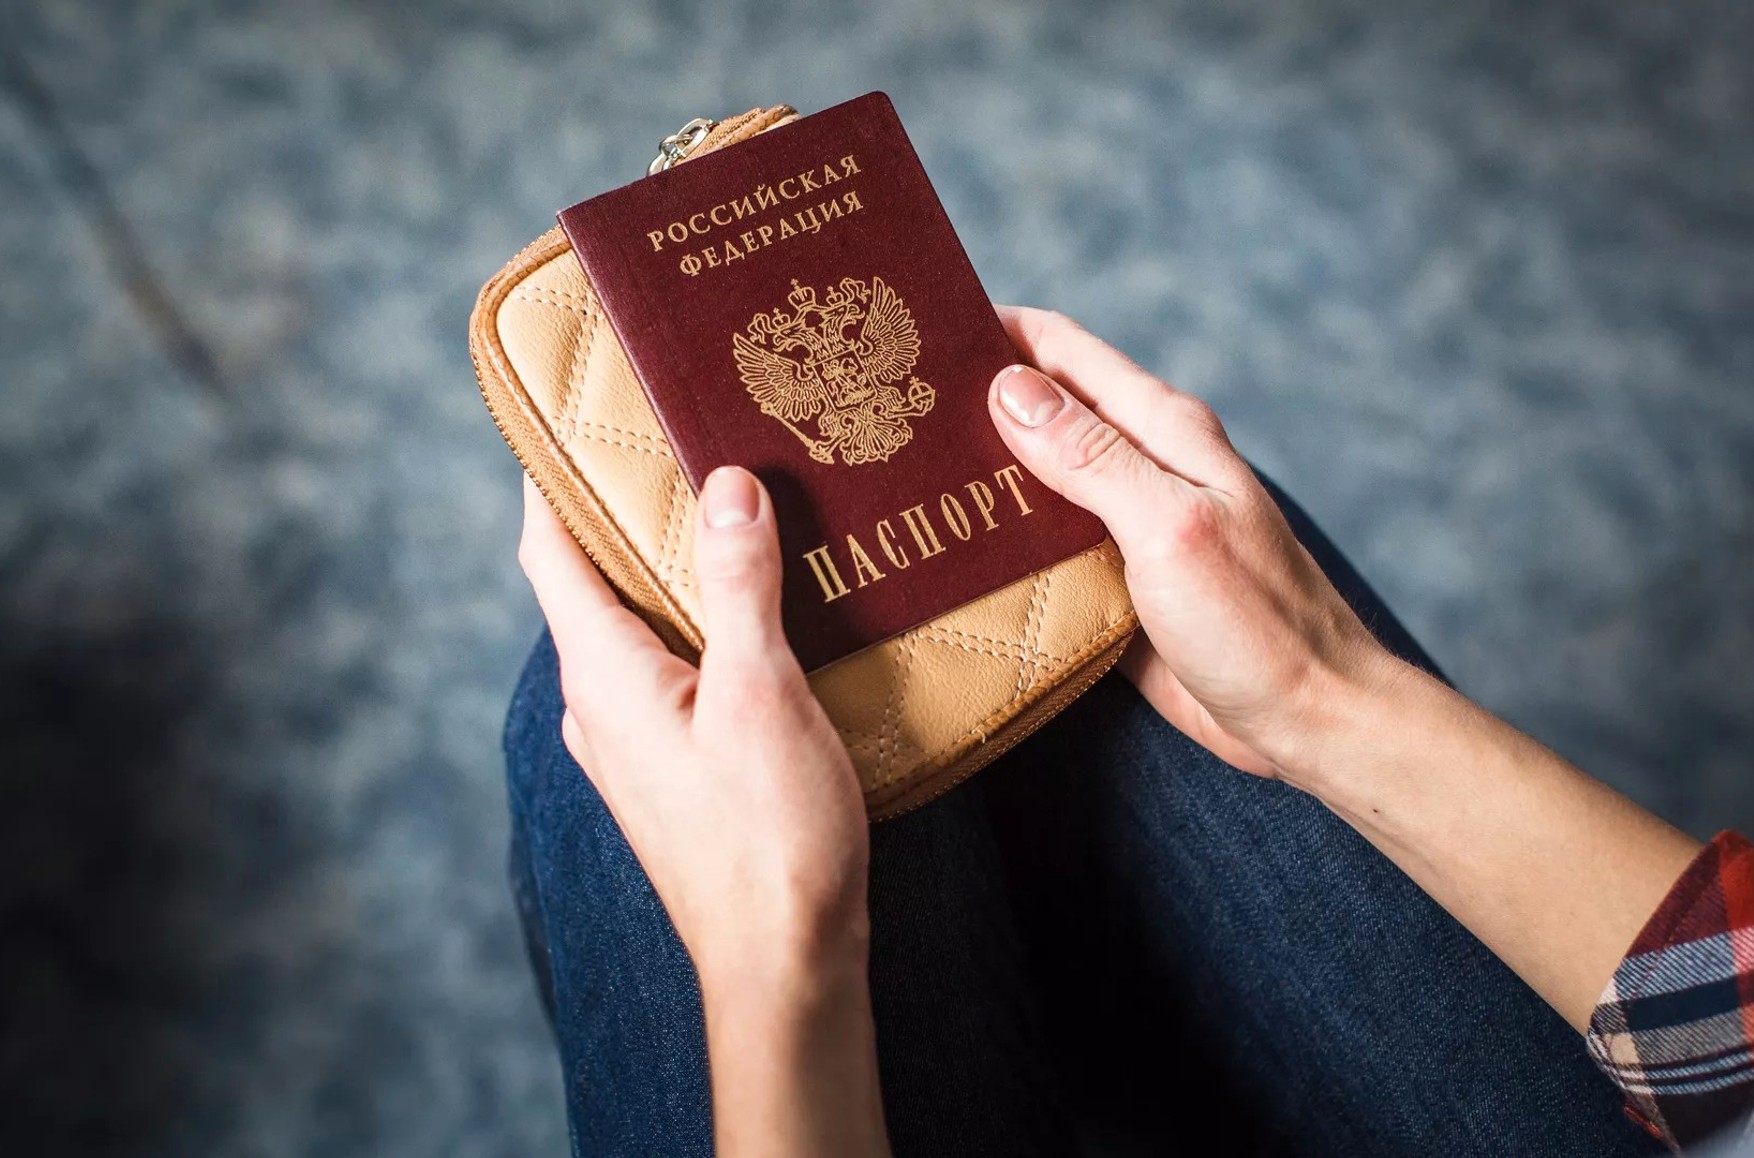 Всего 12 россиян получили украинские визы за семь месяцев визового режима — ГПСУ